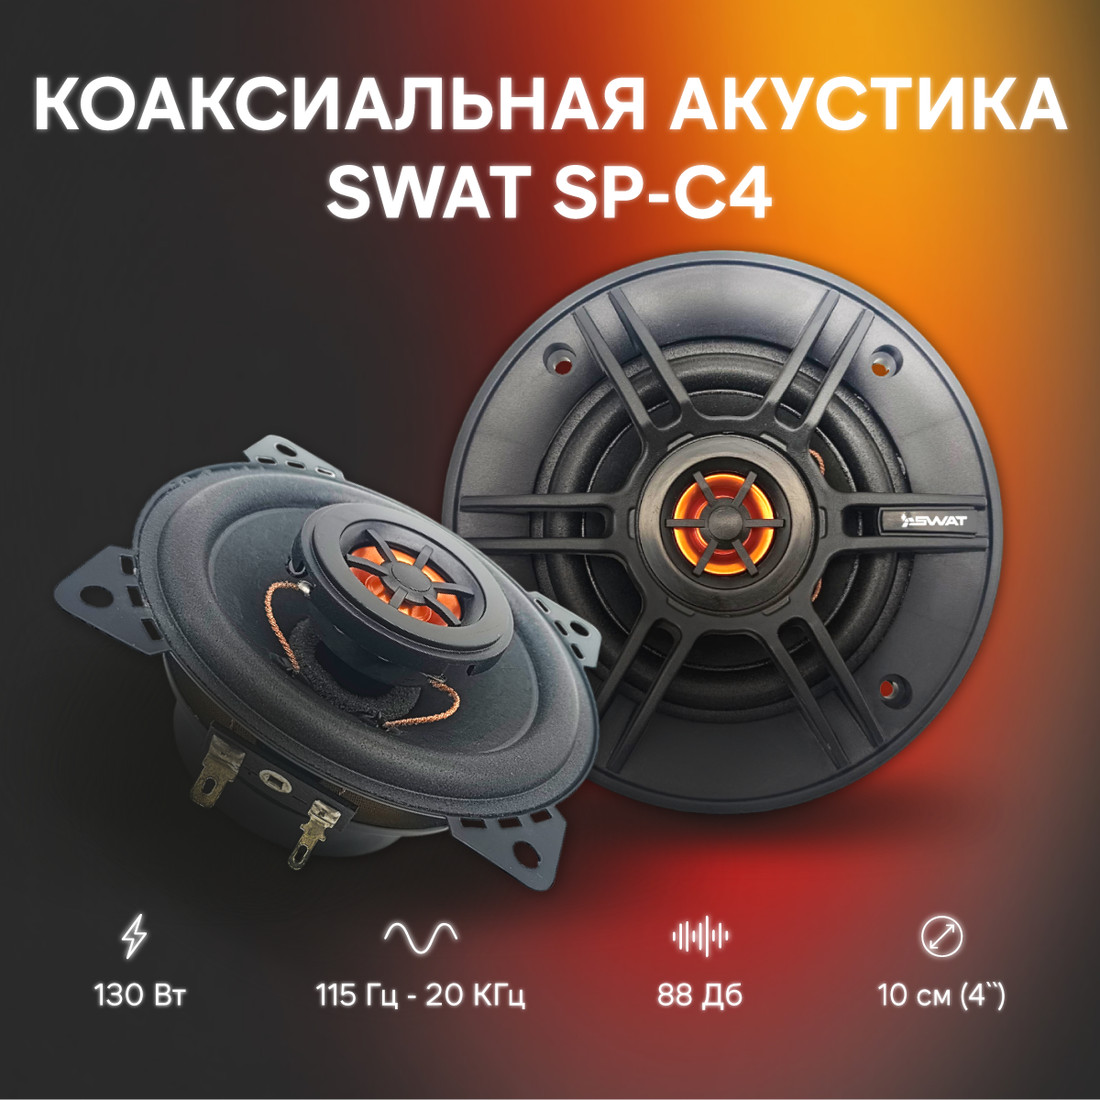 Swat SP-C4